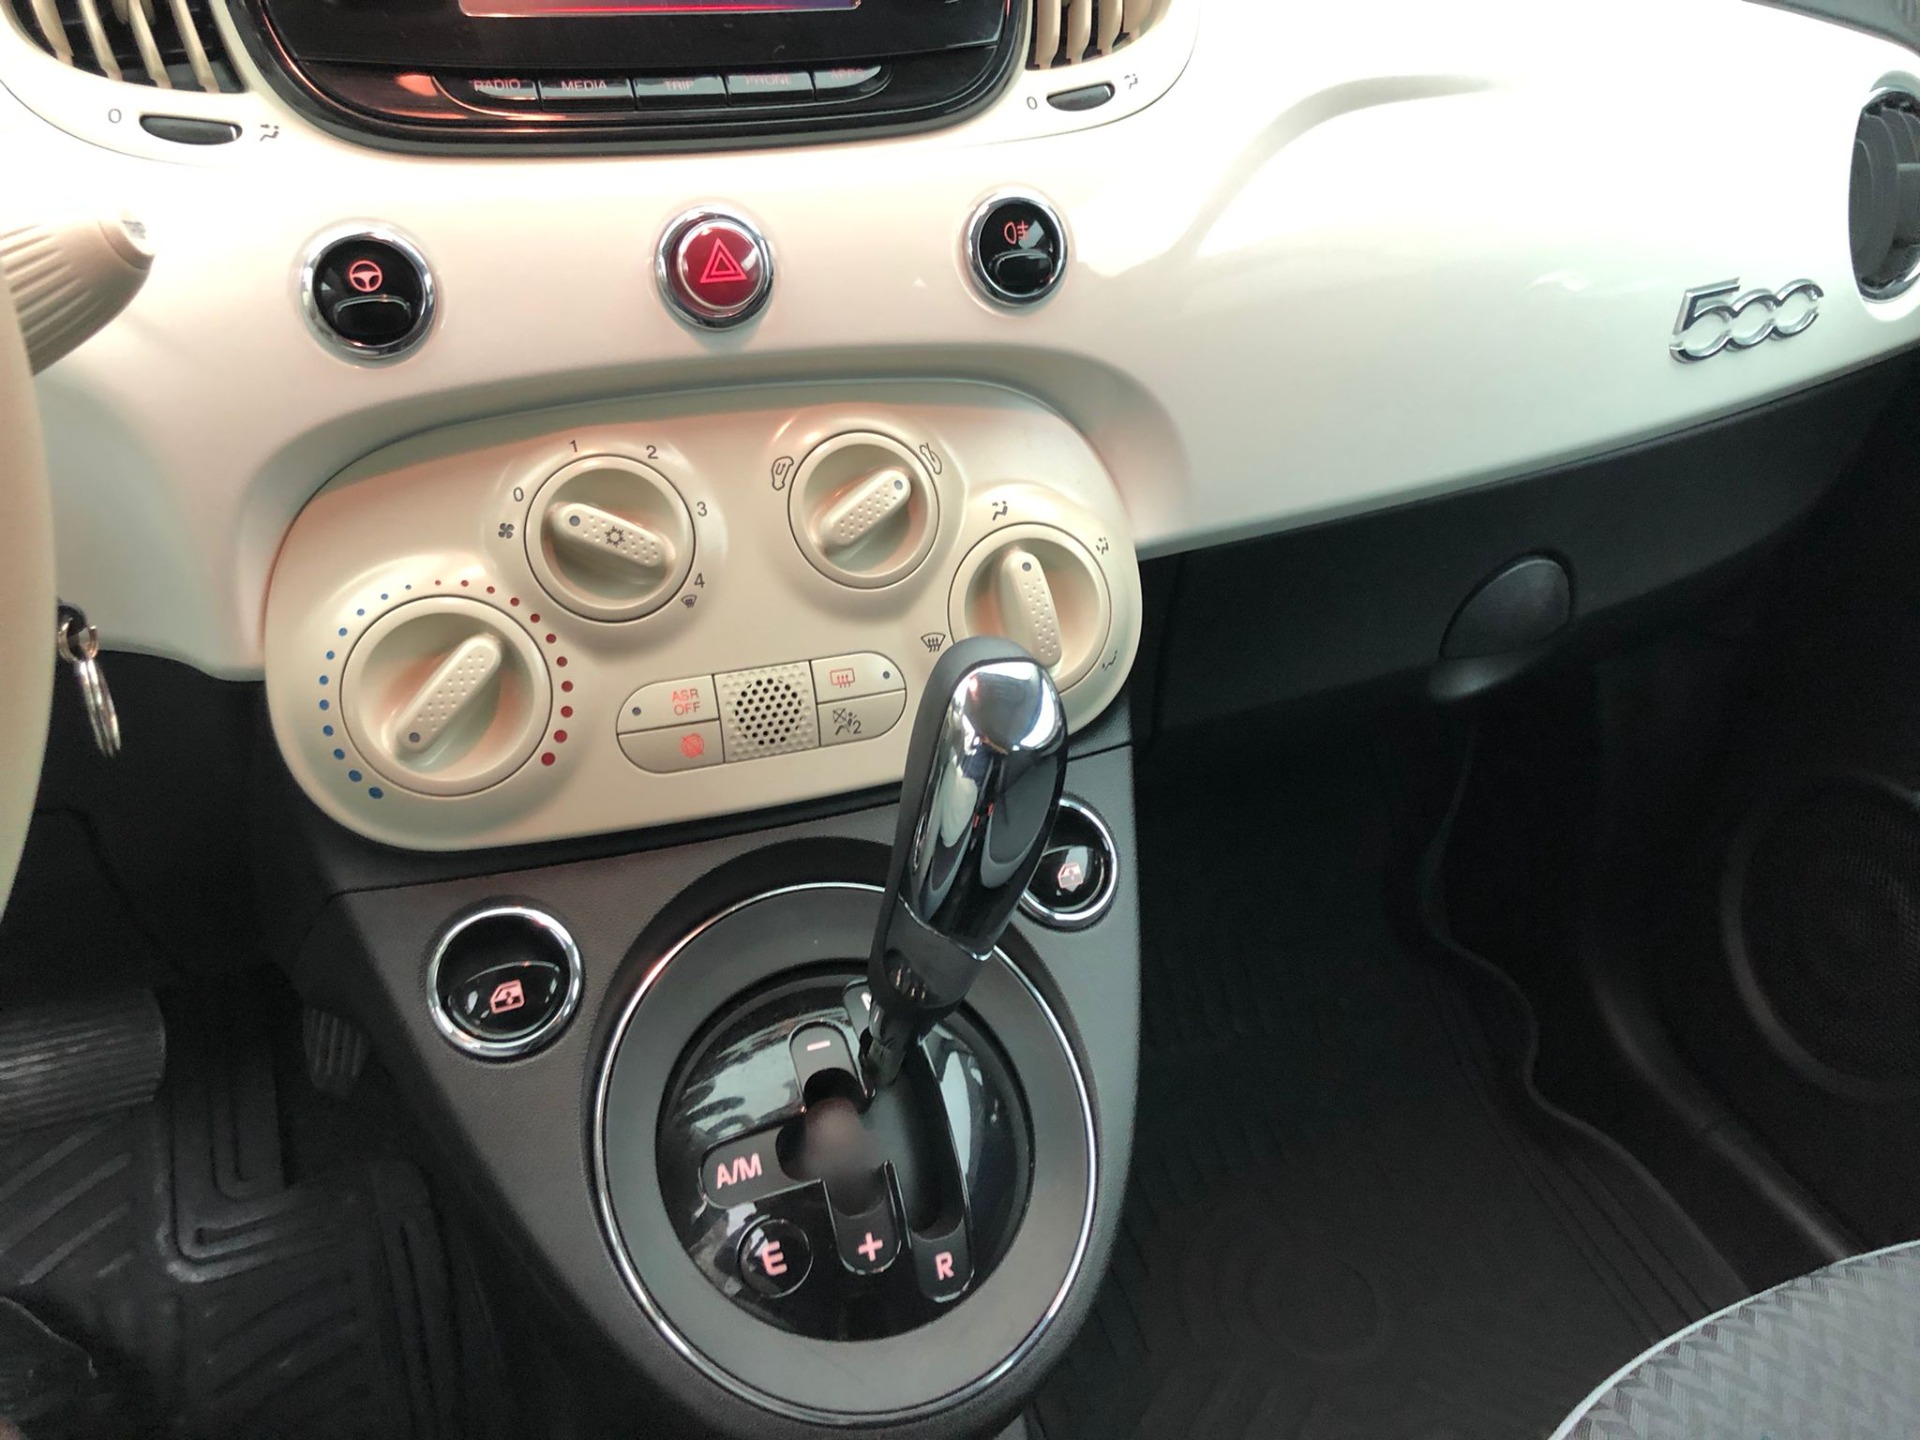 2020 2Bin Km'de Otomatik Boyasız 1.2 Popstar Fiat 500-20